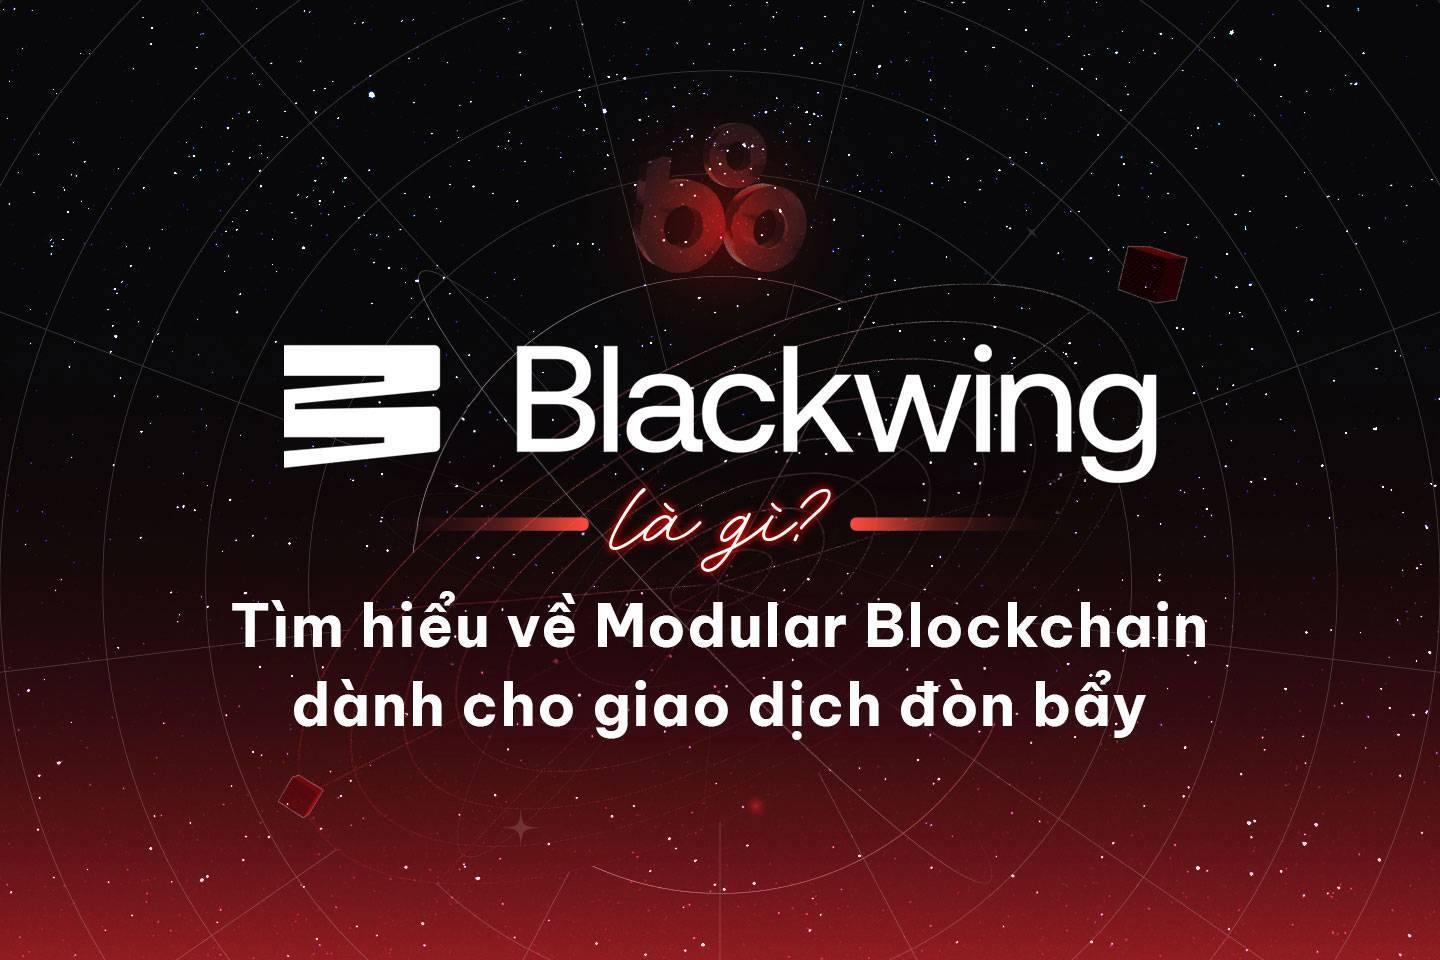 blackwing-la-gi-tim-hieu-ve-modular-blockchain-danh-cho-giao-dich-don-bay